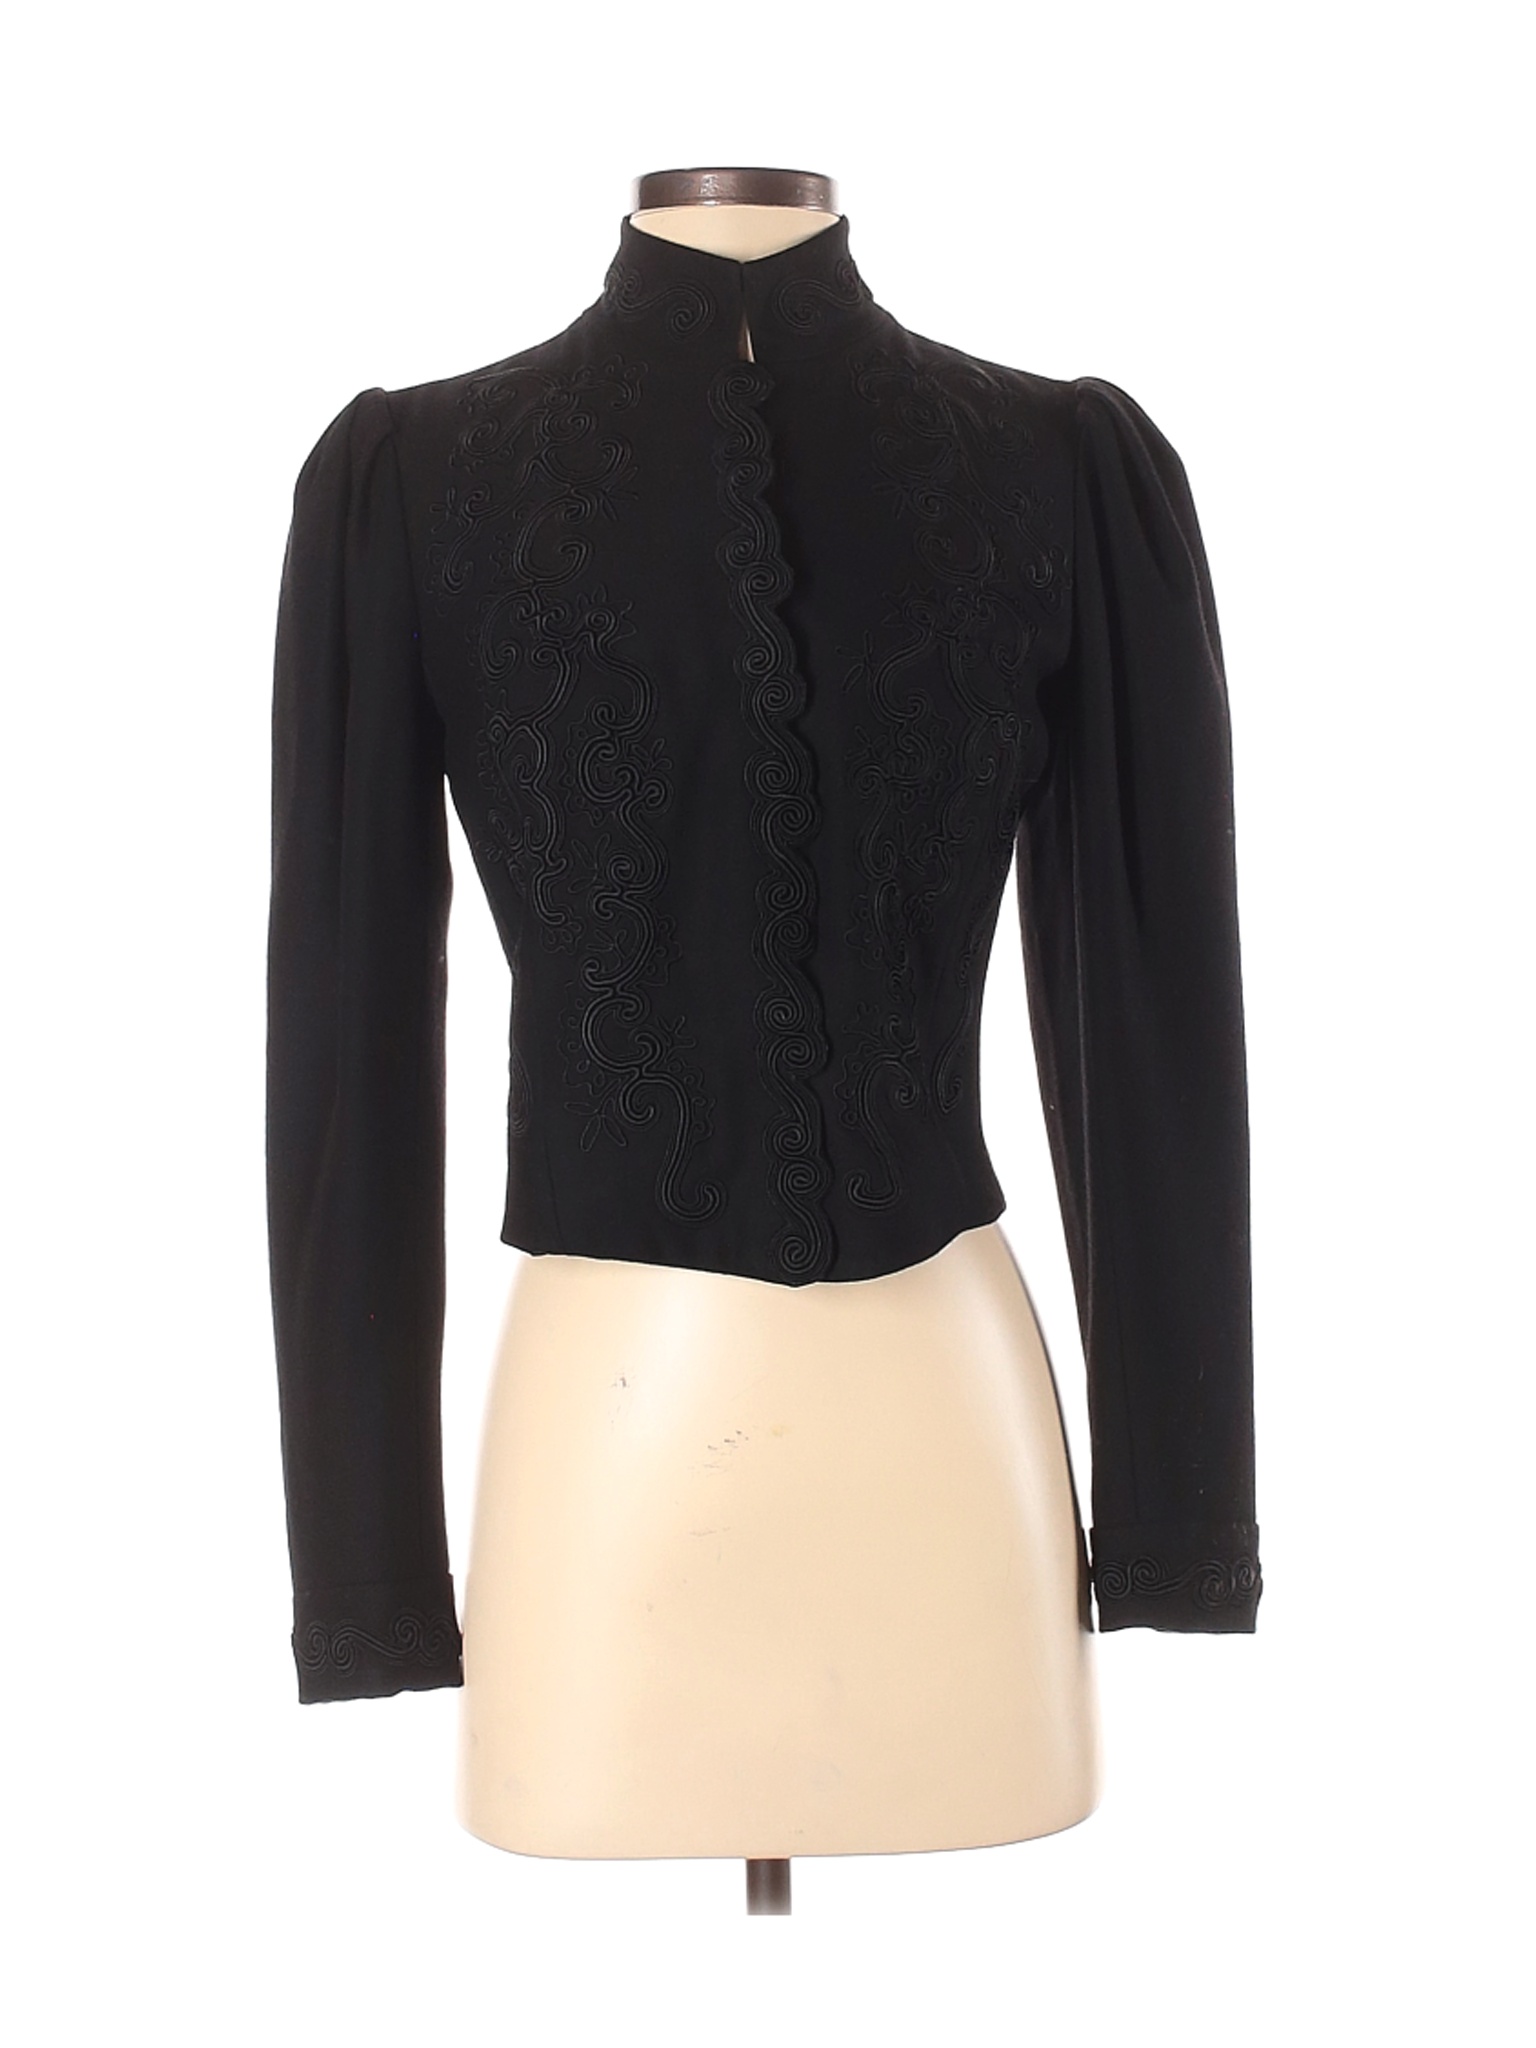 Ralph Lauren Collection Women Black Wool Blazer 6 | eBay